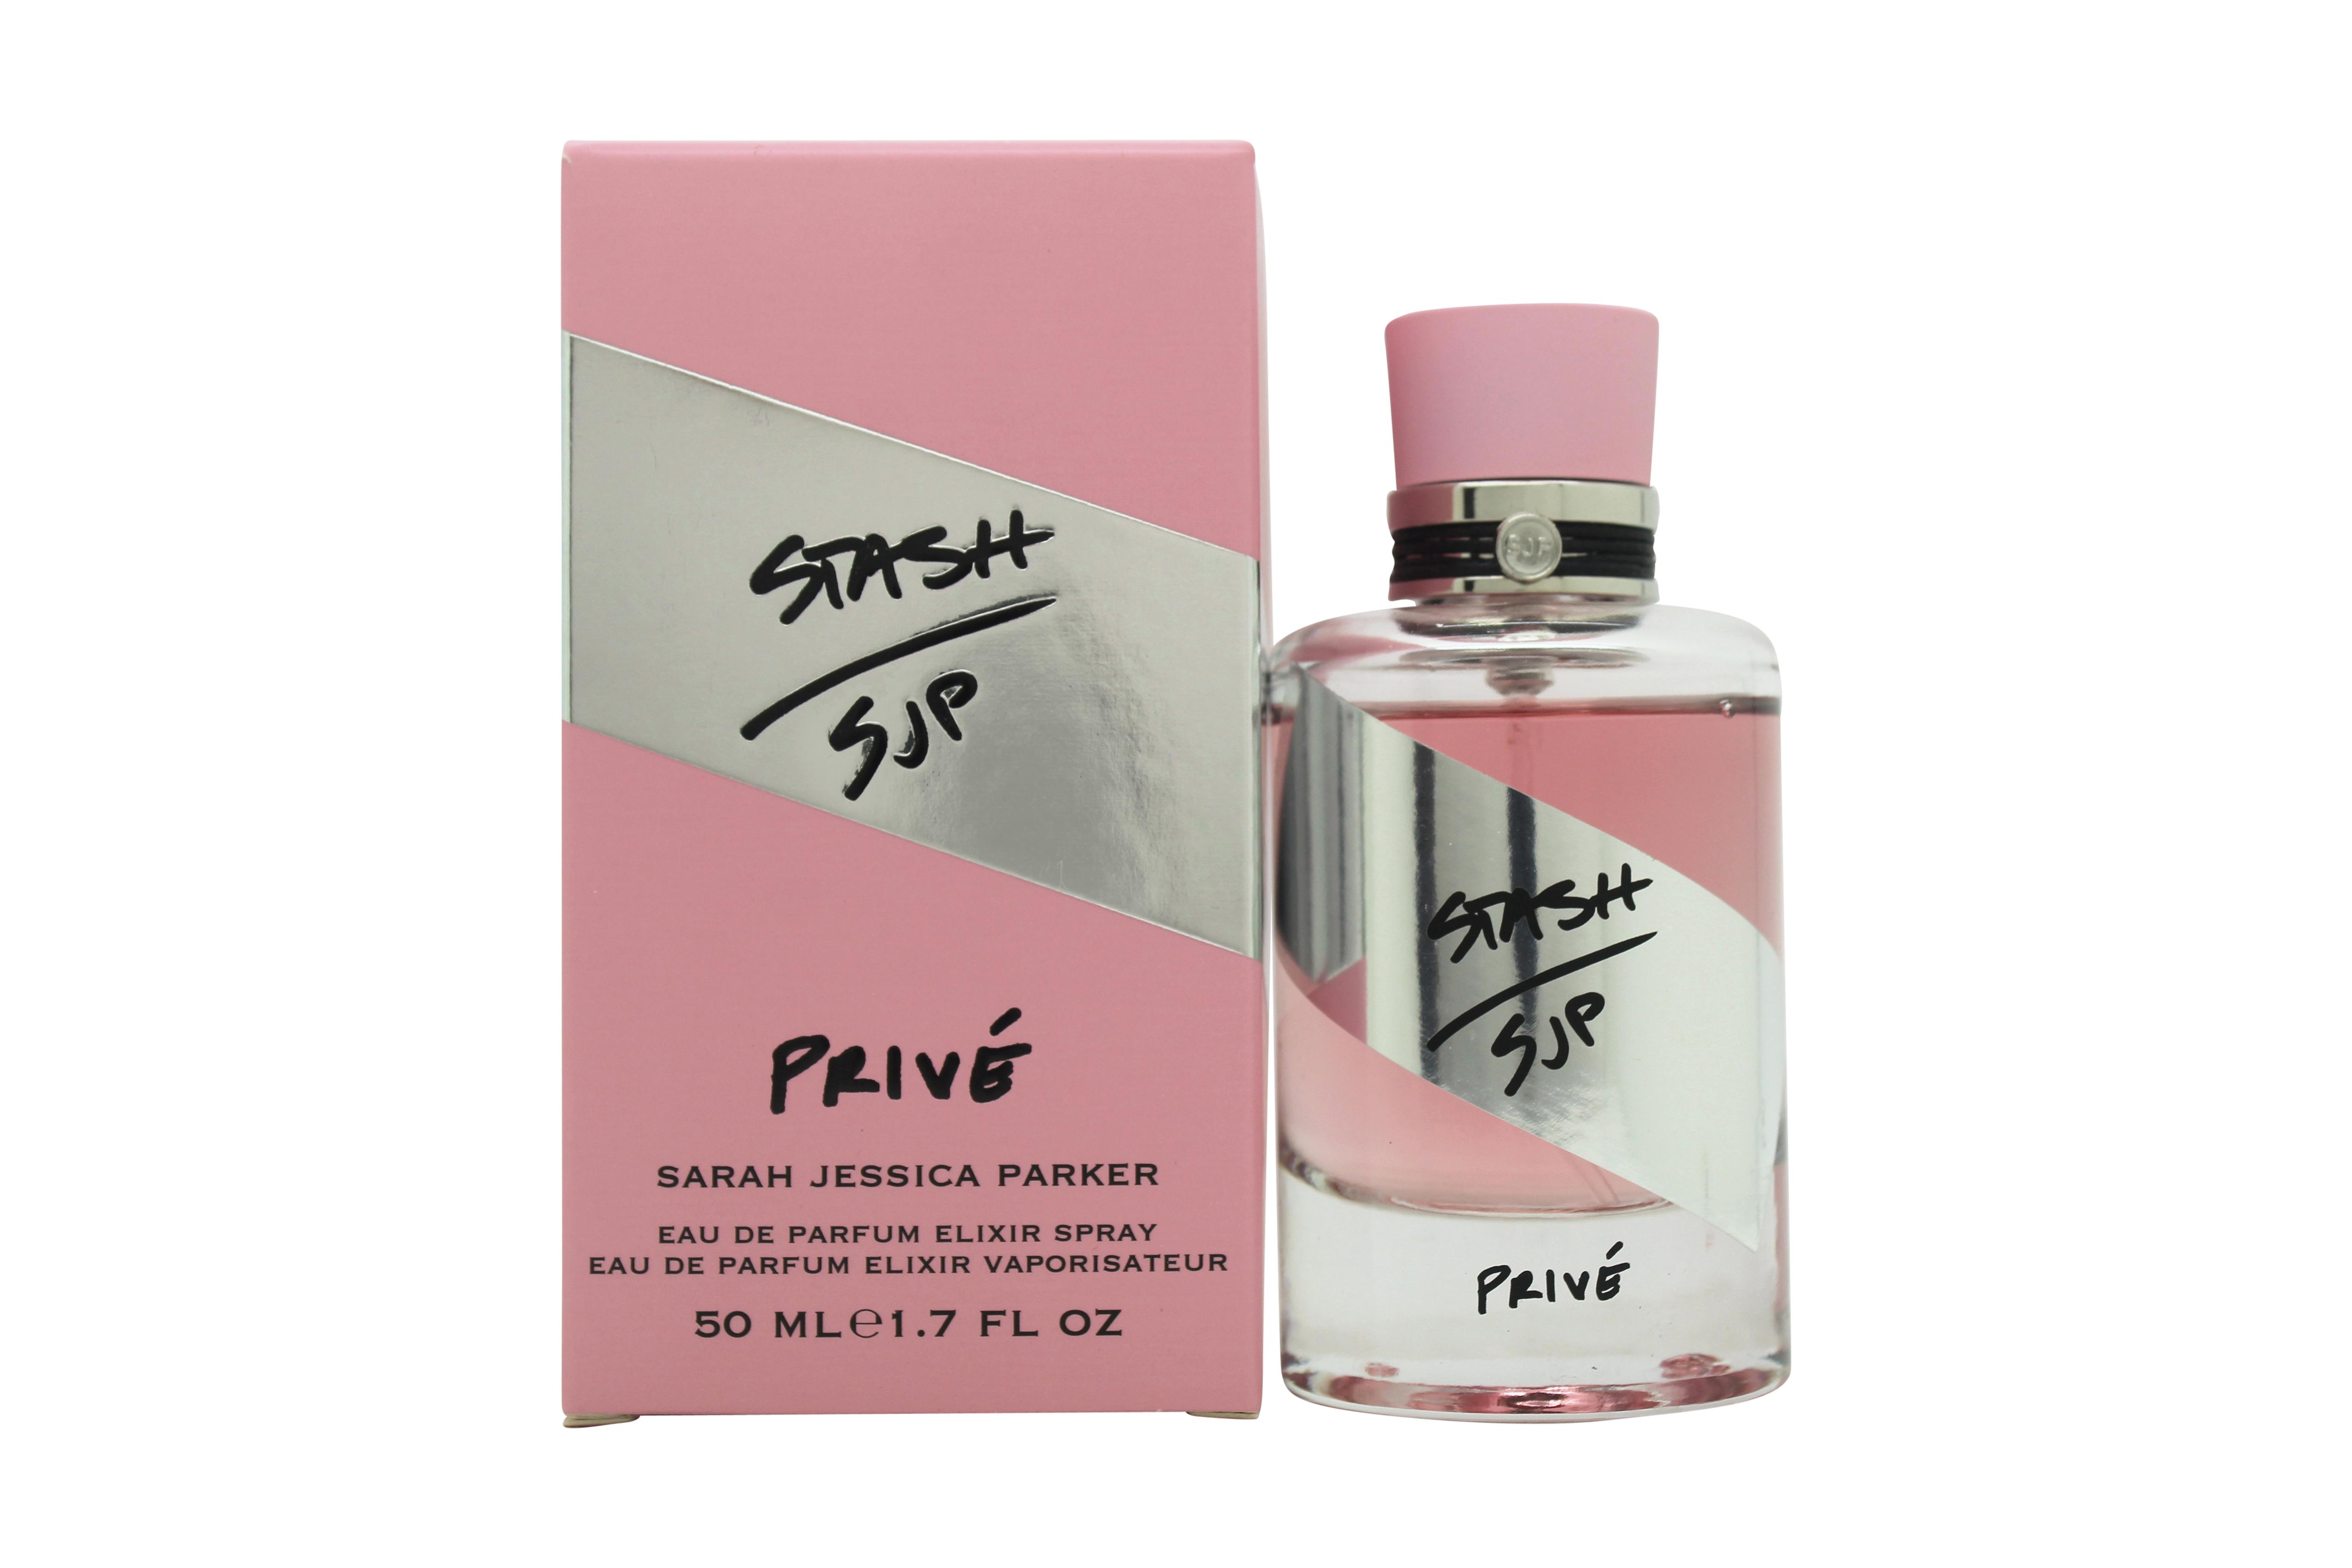 Sarah Jessica Parker Stash Prive Eau de Parfum 50ml Spray